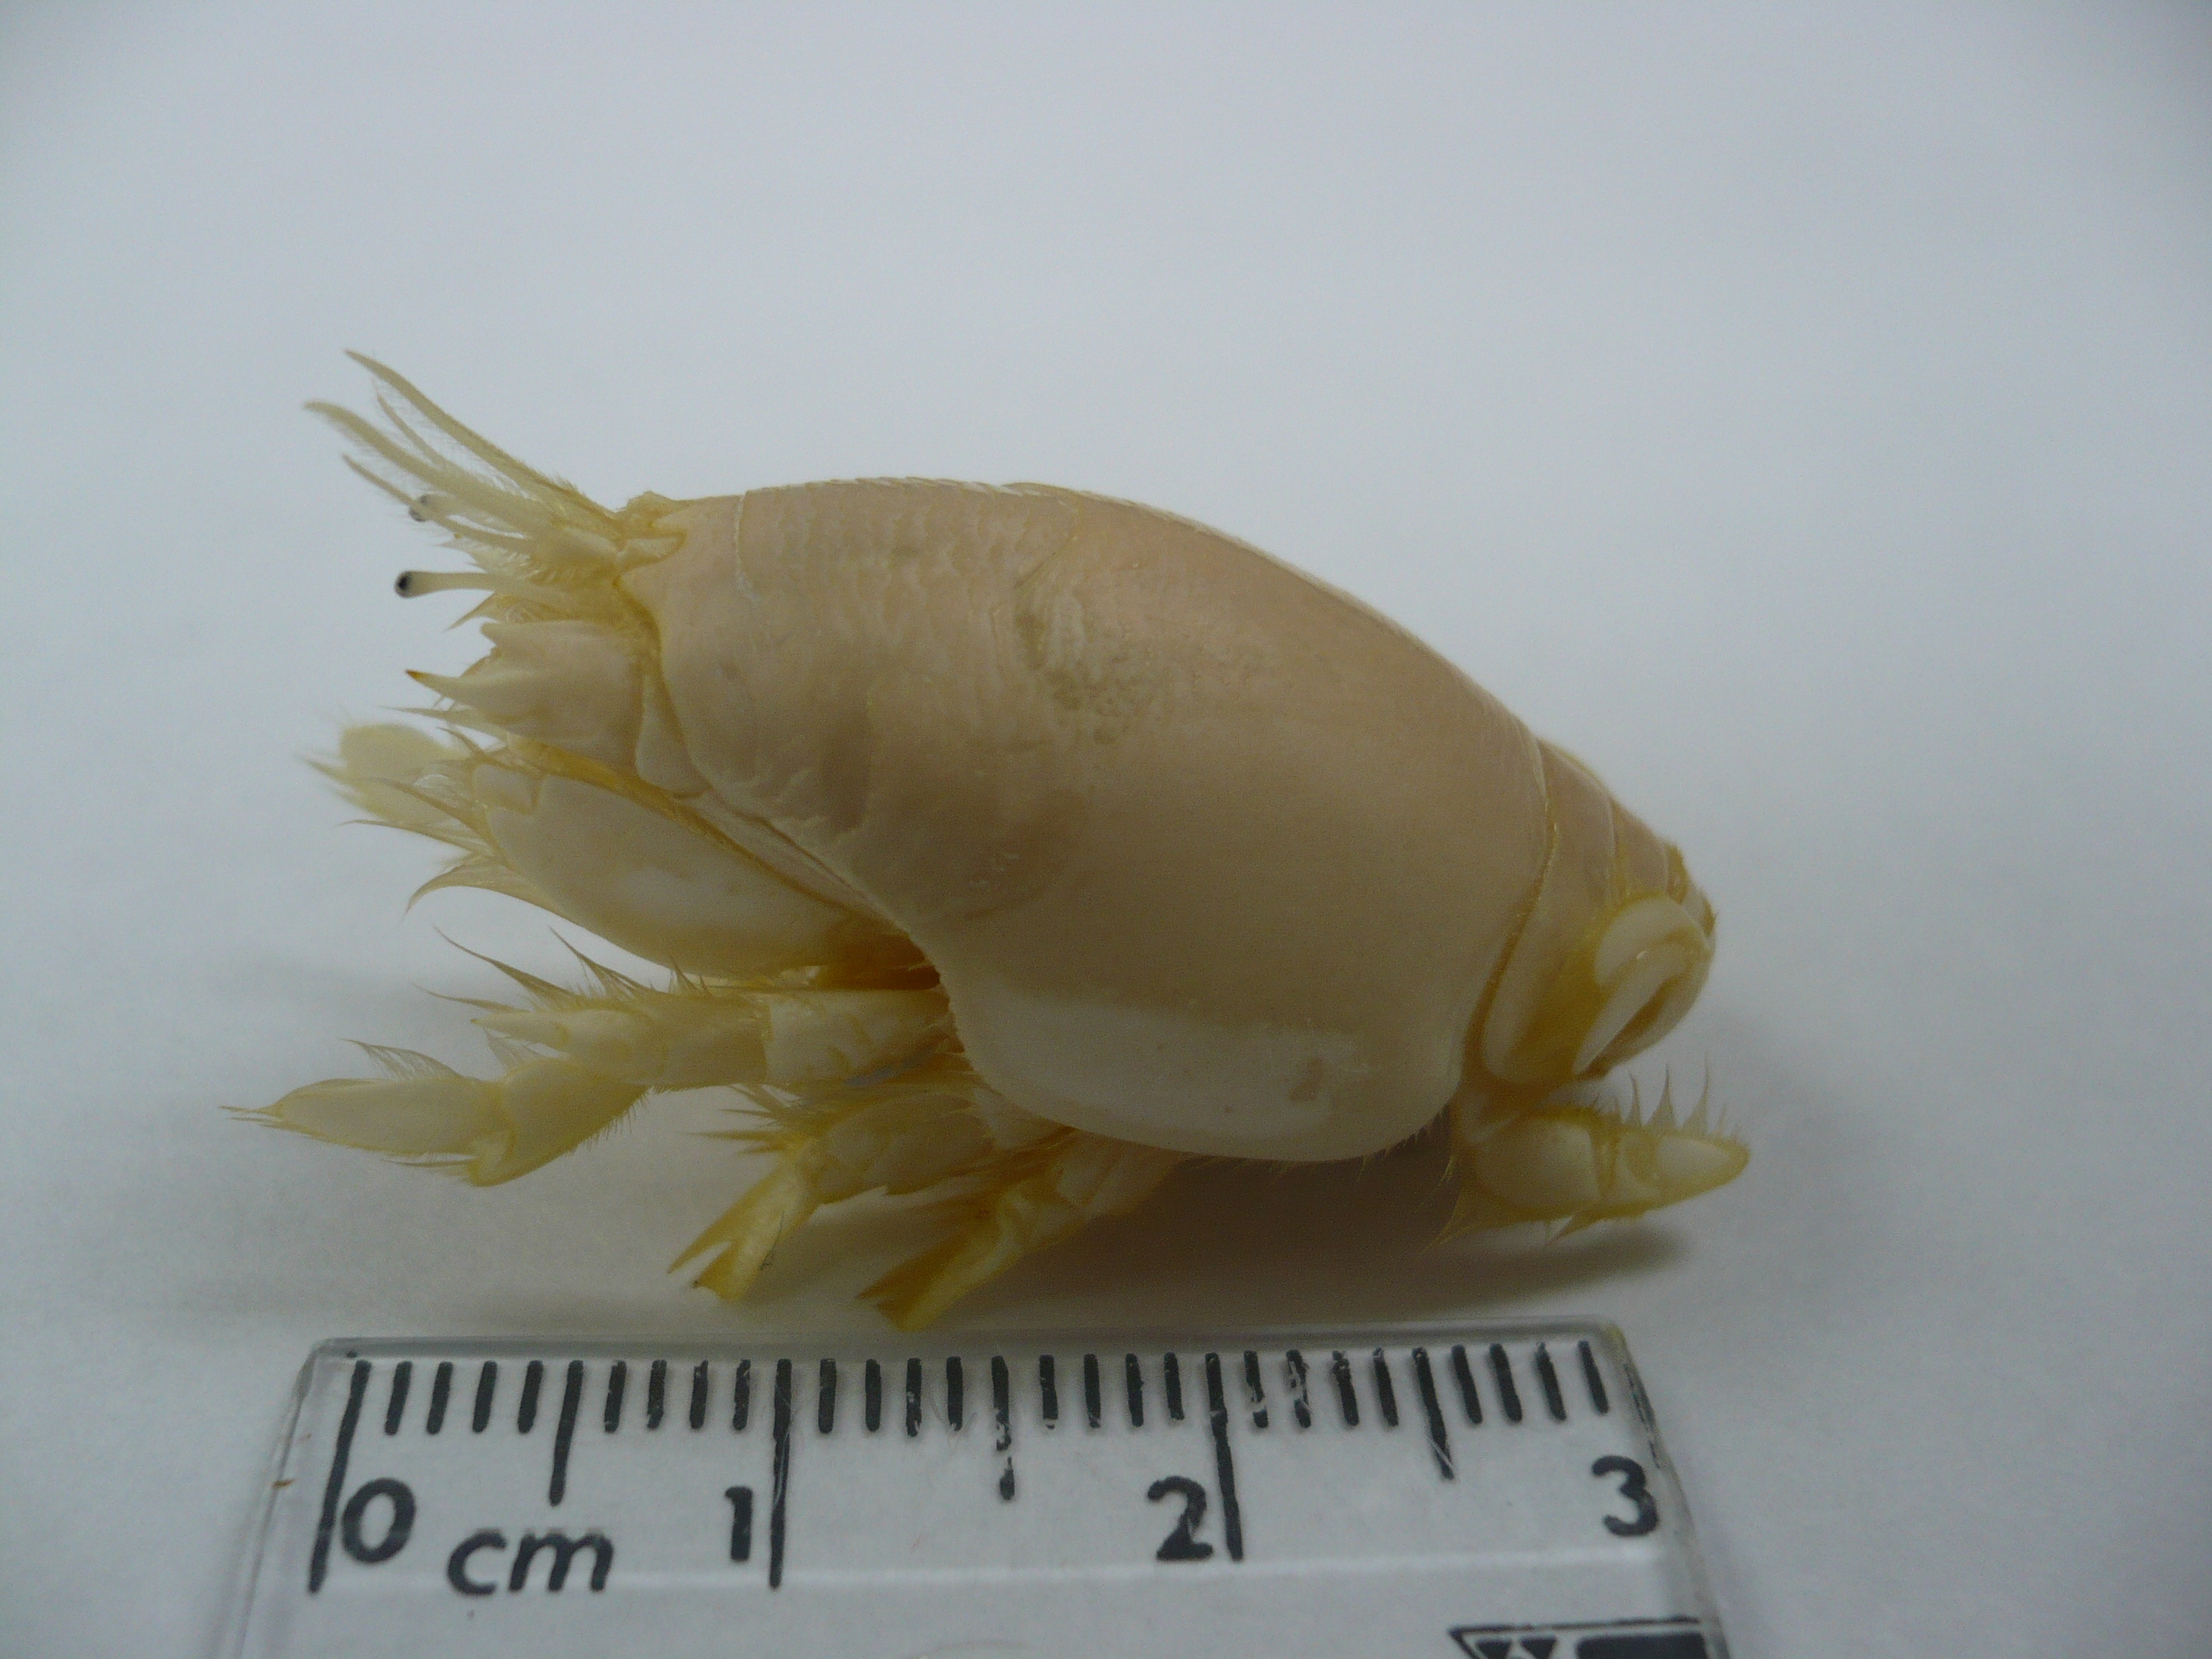 Emerita talpoida, un crustáceo cuyas poblaciones se ha observado que han ido disminuyendo en los últimos años en las playas arenosas de México.